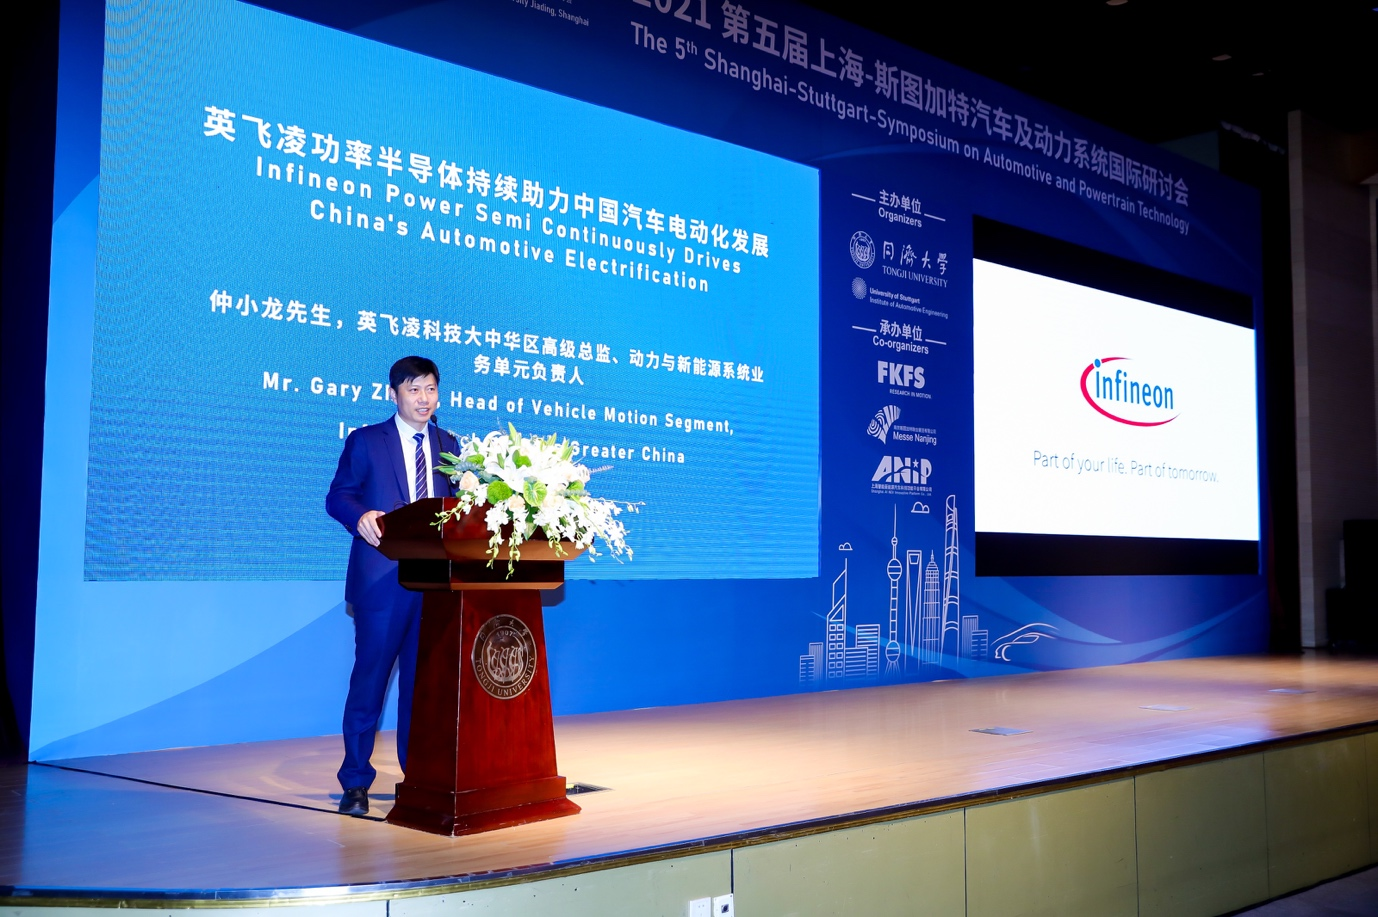 第五届上海—斯图加特汽车及动力系统国际研讨会成功于同济大学举办